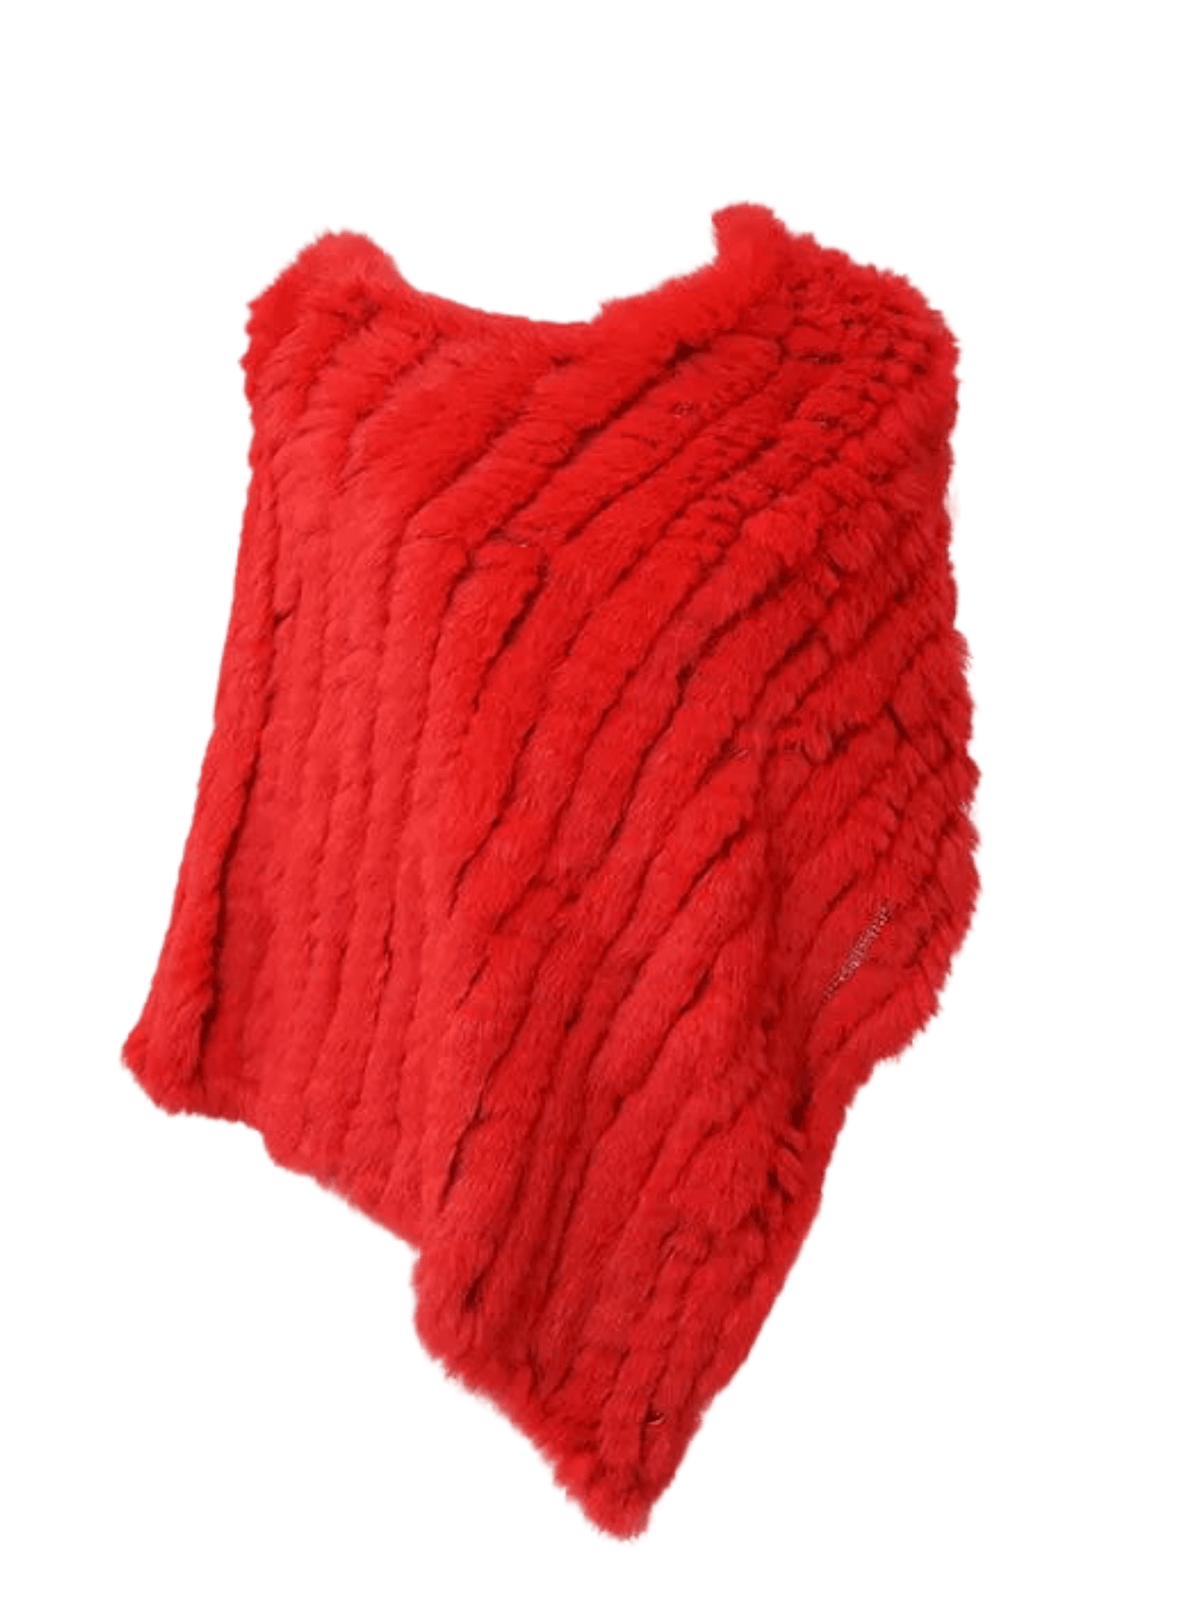  Poncho Chic Femme en Fourrure  Rouge / Taille Unique / 100% Fourrure de Lapin